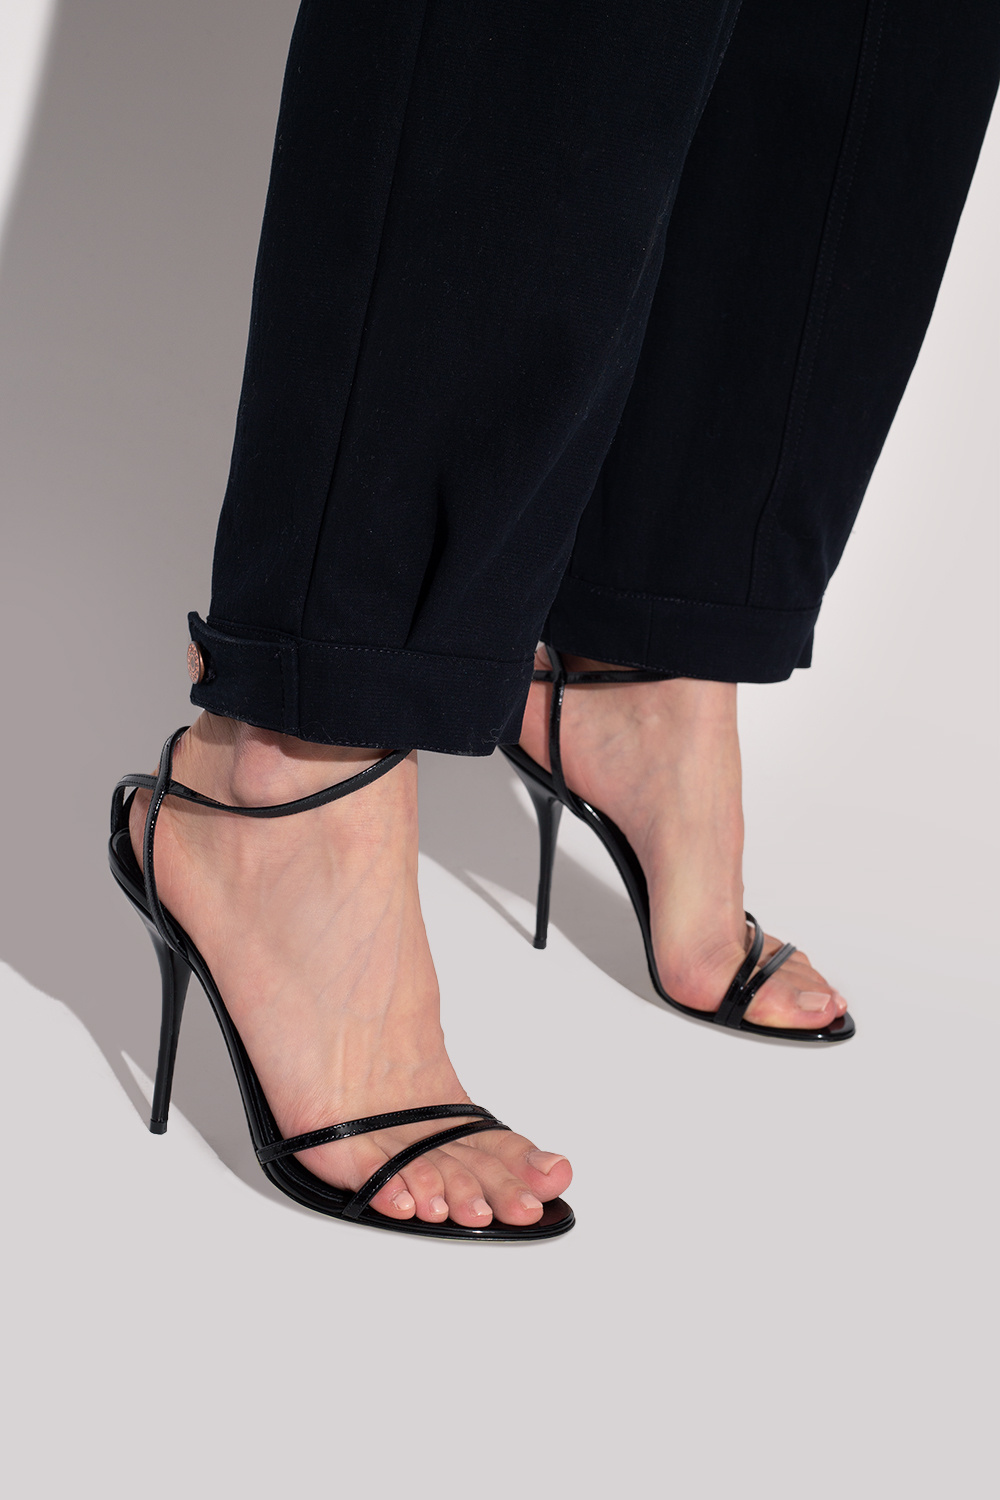 Штаны dolce & gabbana размер 26 красные ‘Keira’ heeled sandals